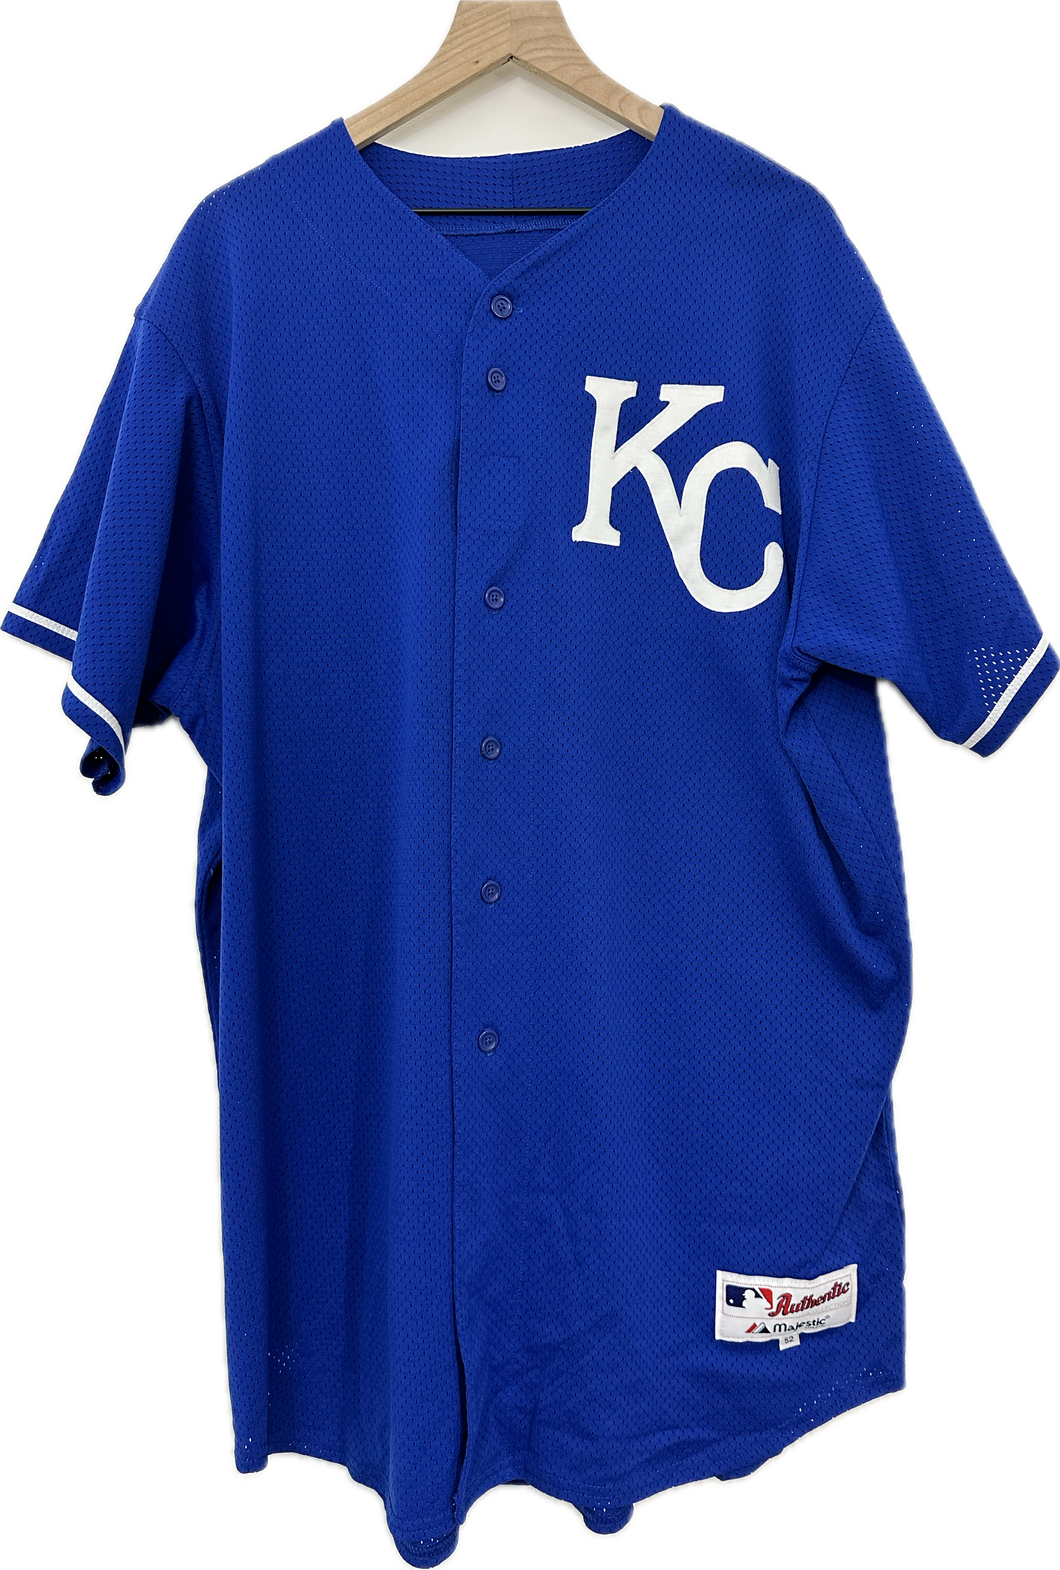 Kansas City Royal Majestic Baseball Jersey